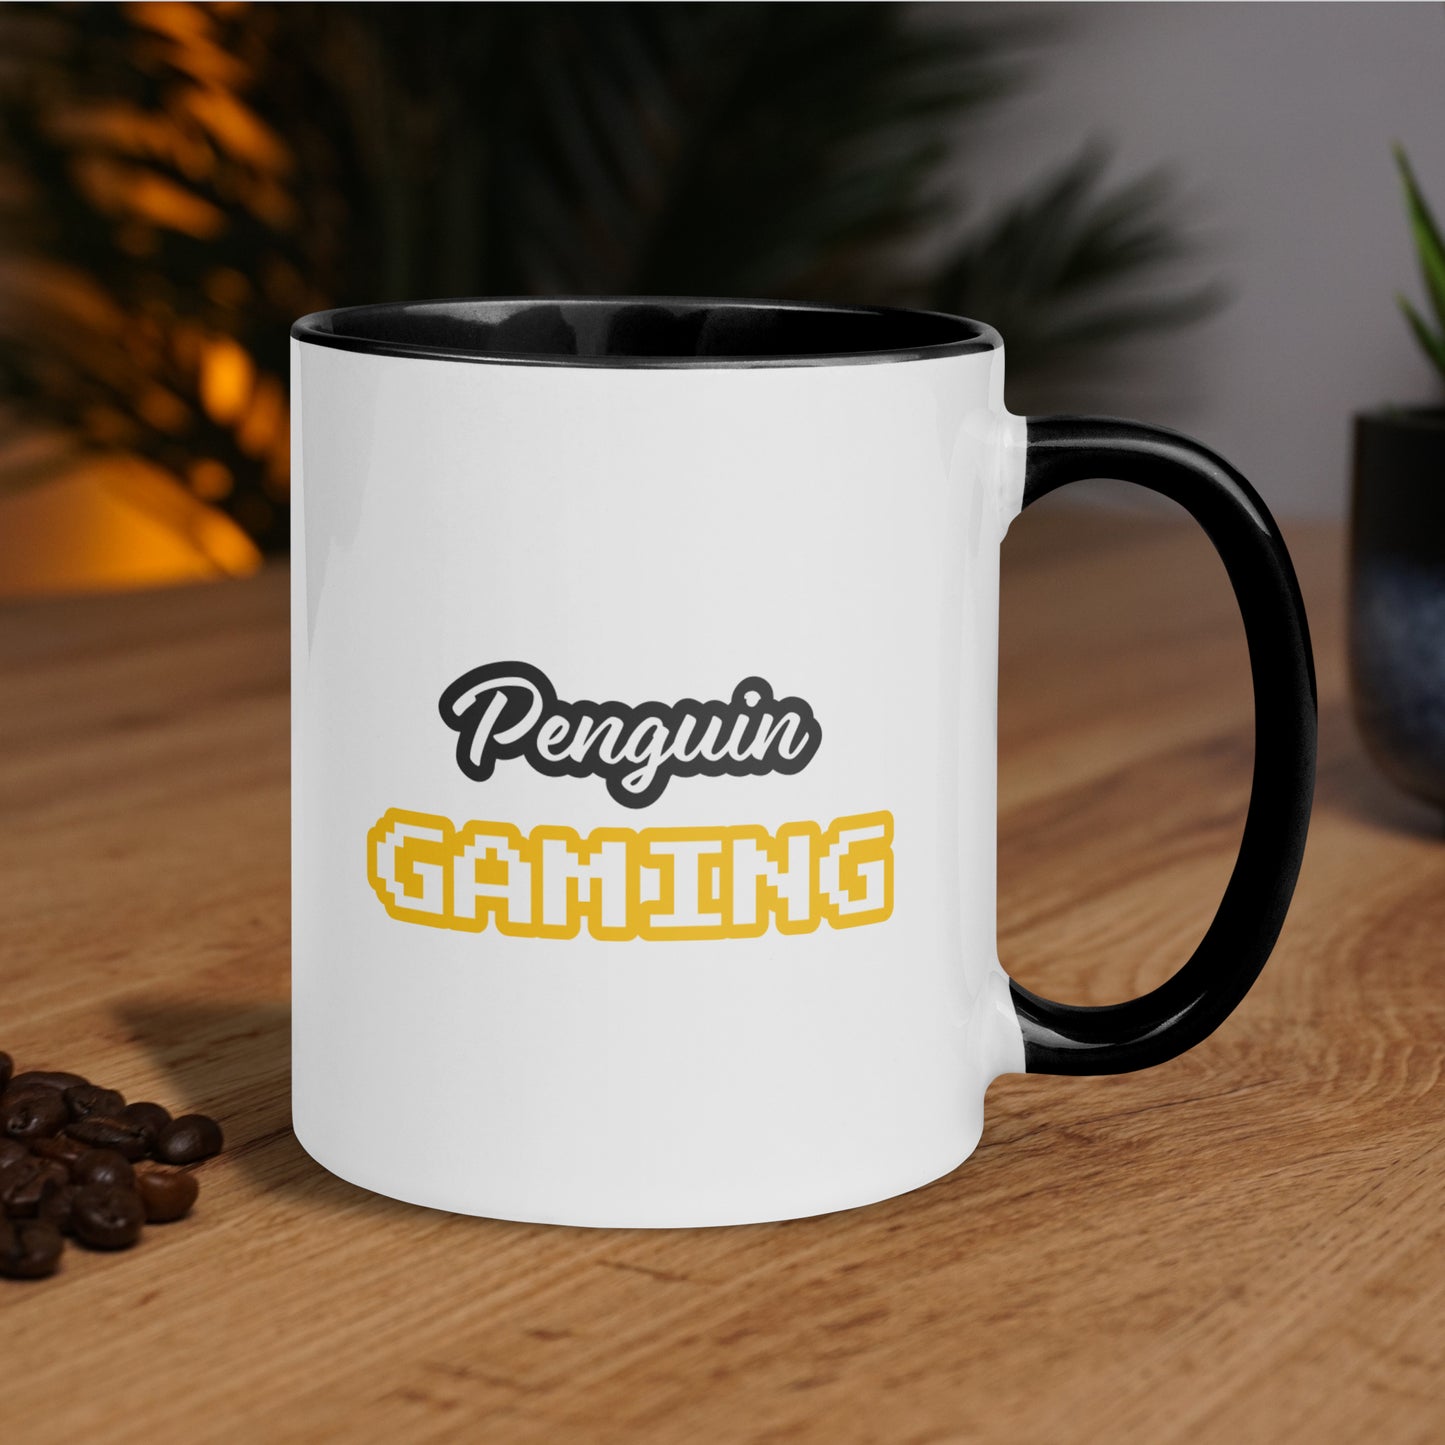 Linux Gaming • Mug